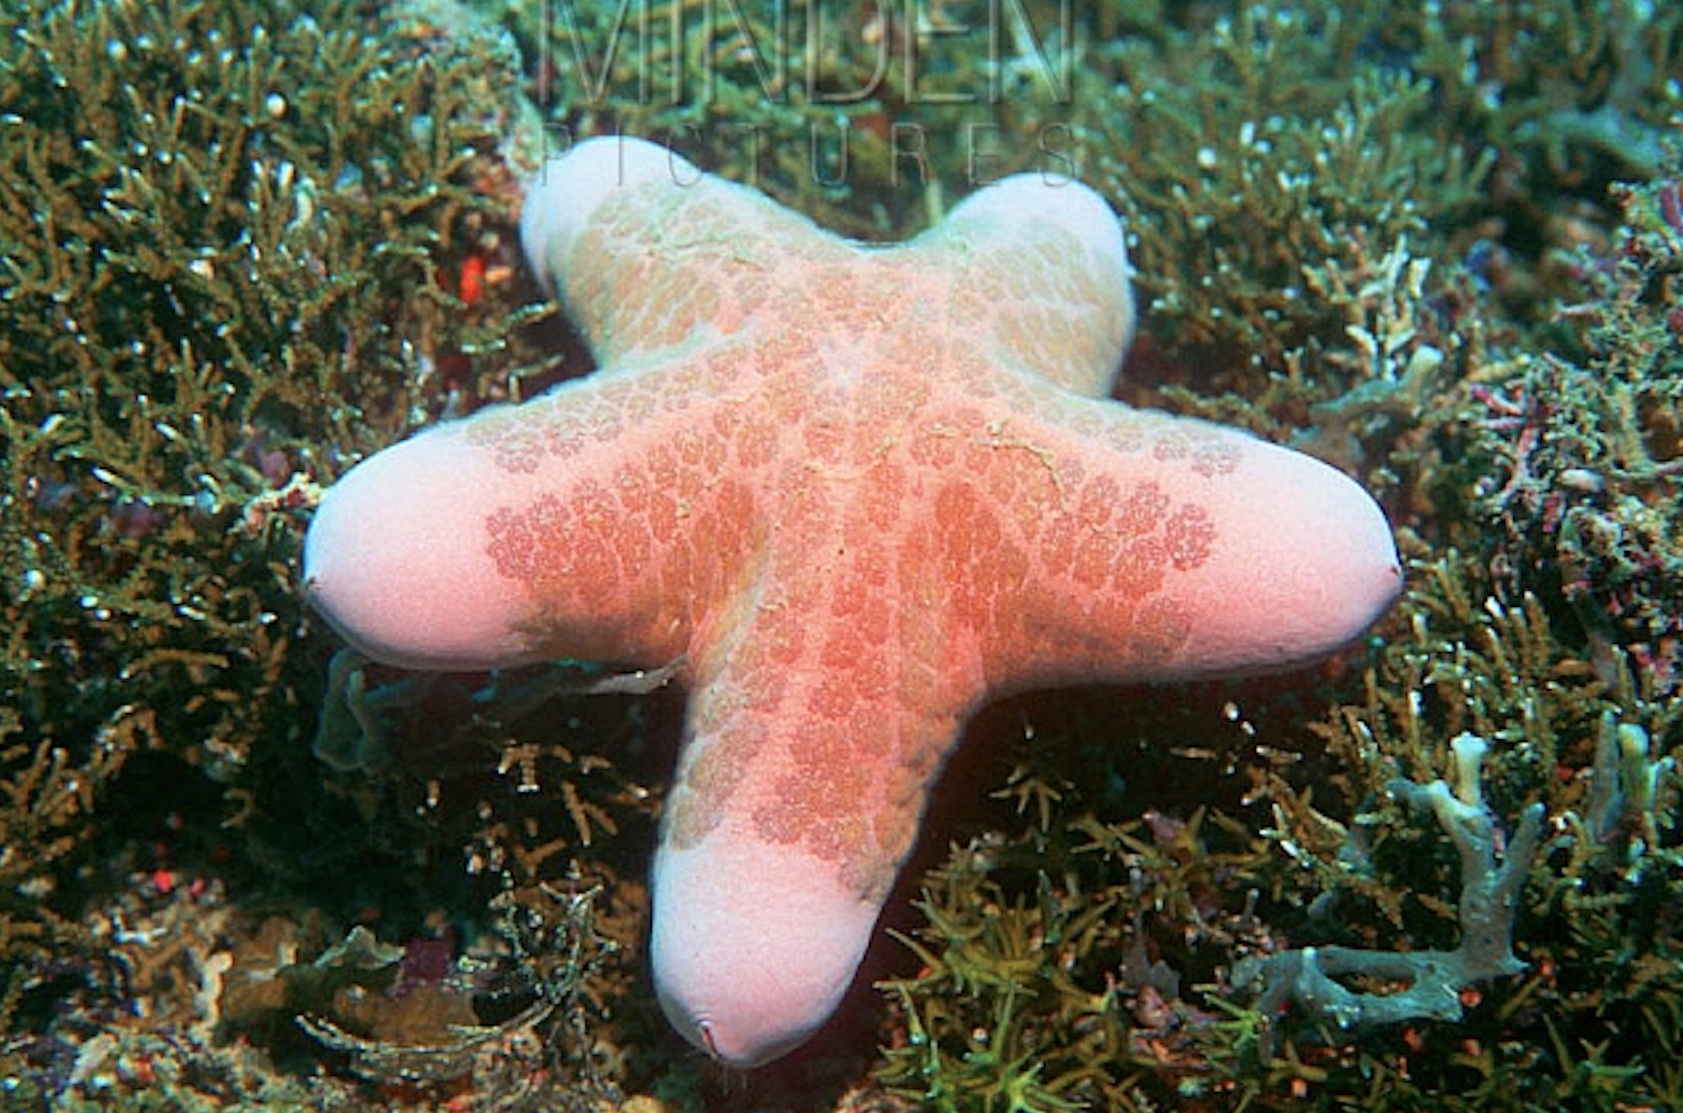 phallic creatures in nature - starfish